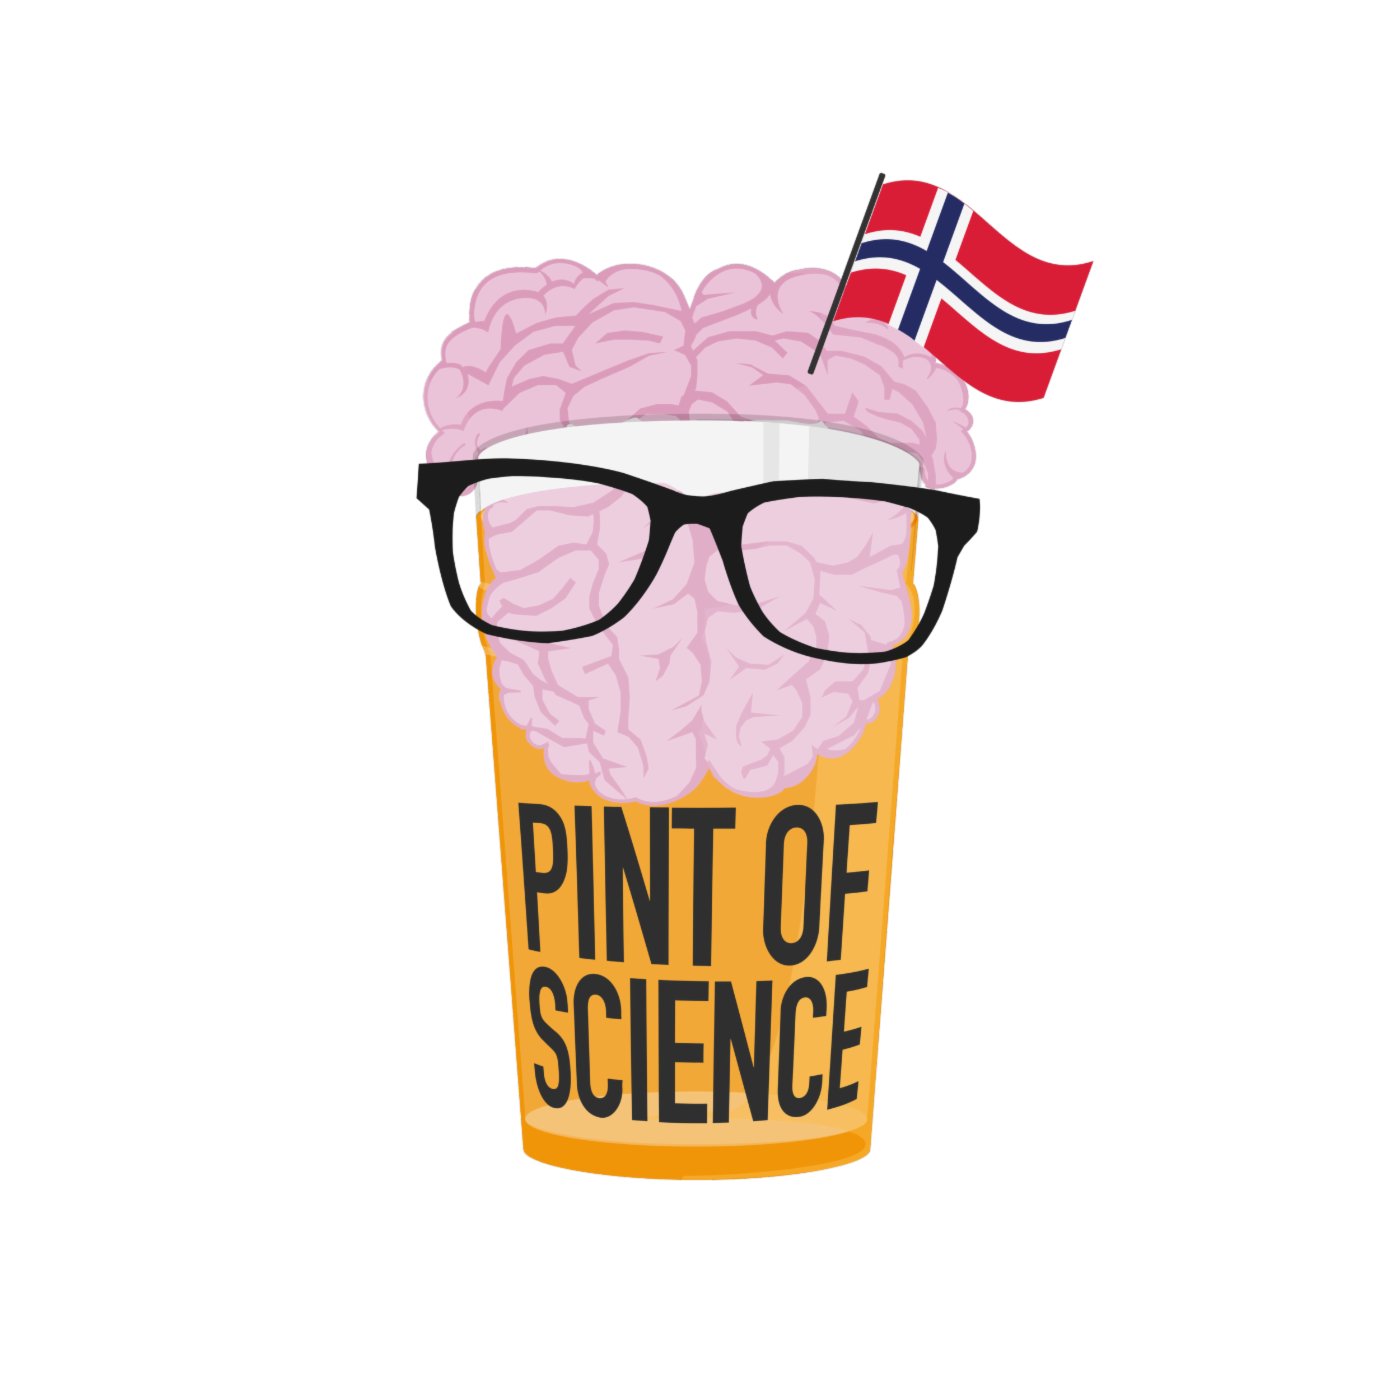 Bilde illustrerer en hjerne i en halvliter, med et norsk flagg.